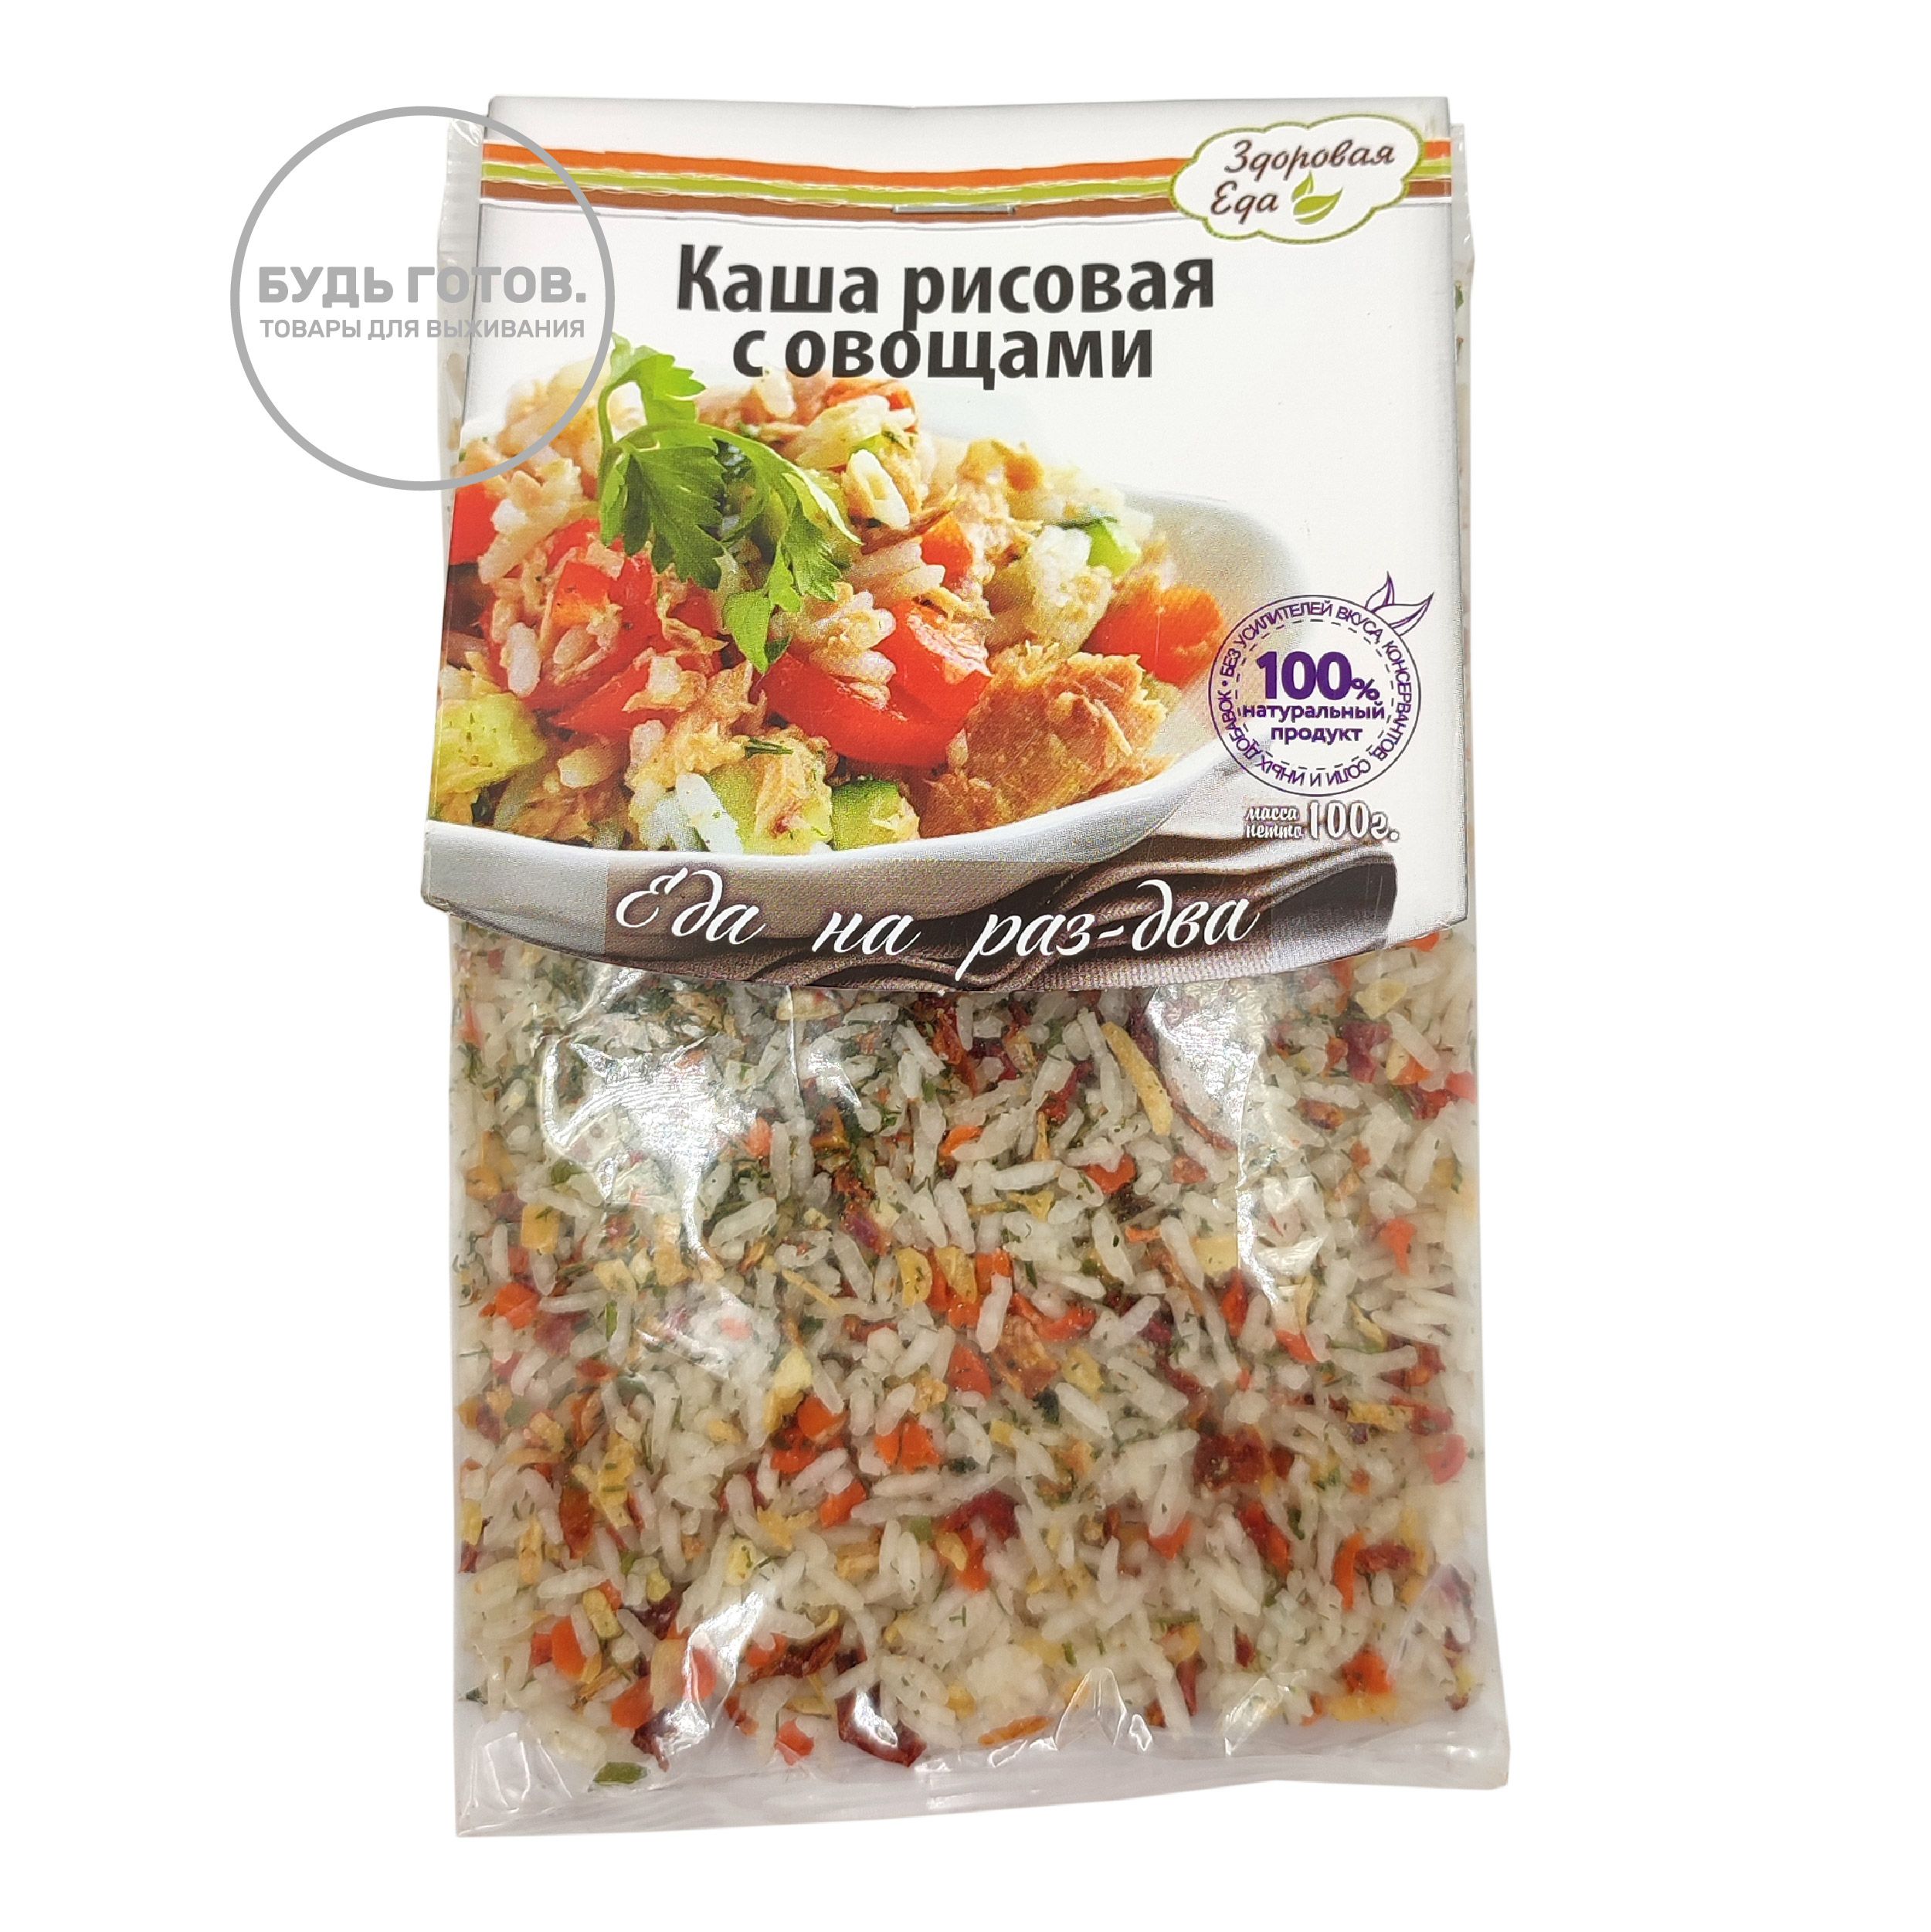 Каша рисовая с овощами "Здоровая еда" 100 г с доставкой по России и в Казахстан | BreadyФото 0